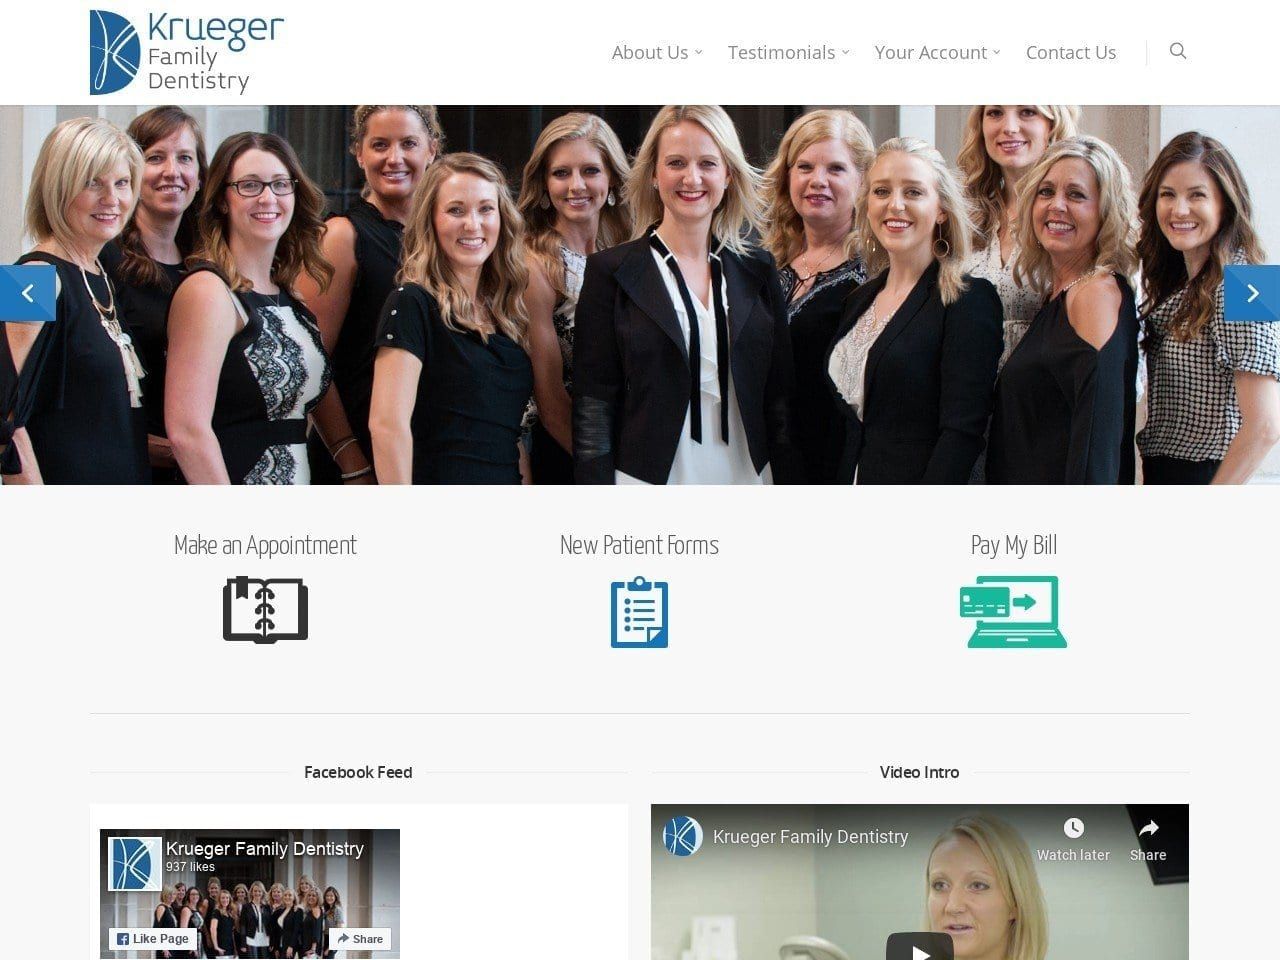 Krueger Family Dentistry Website Screenshot from kruegerfamilydentistry.com